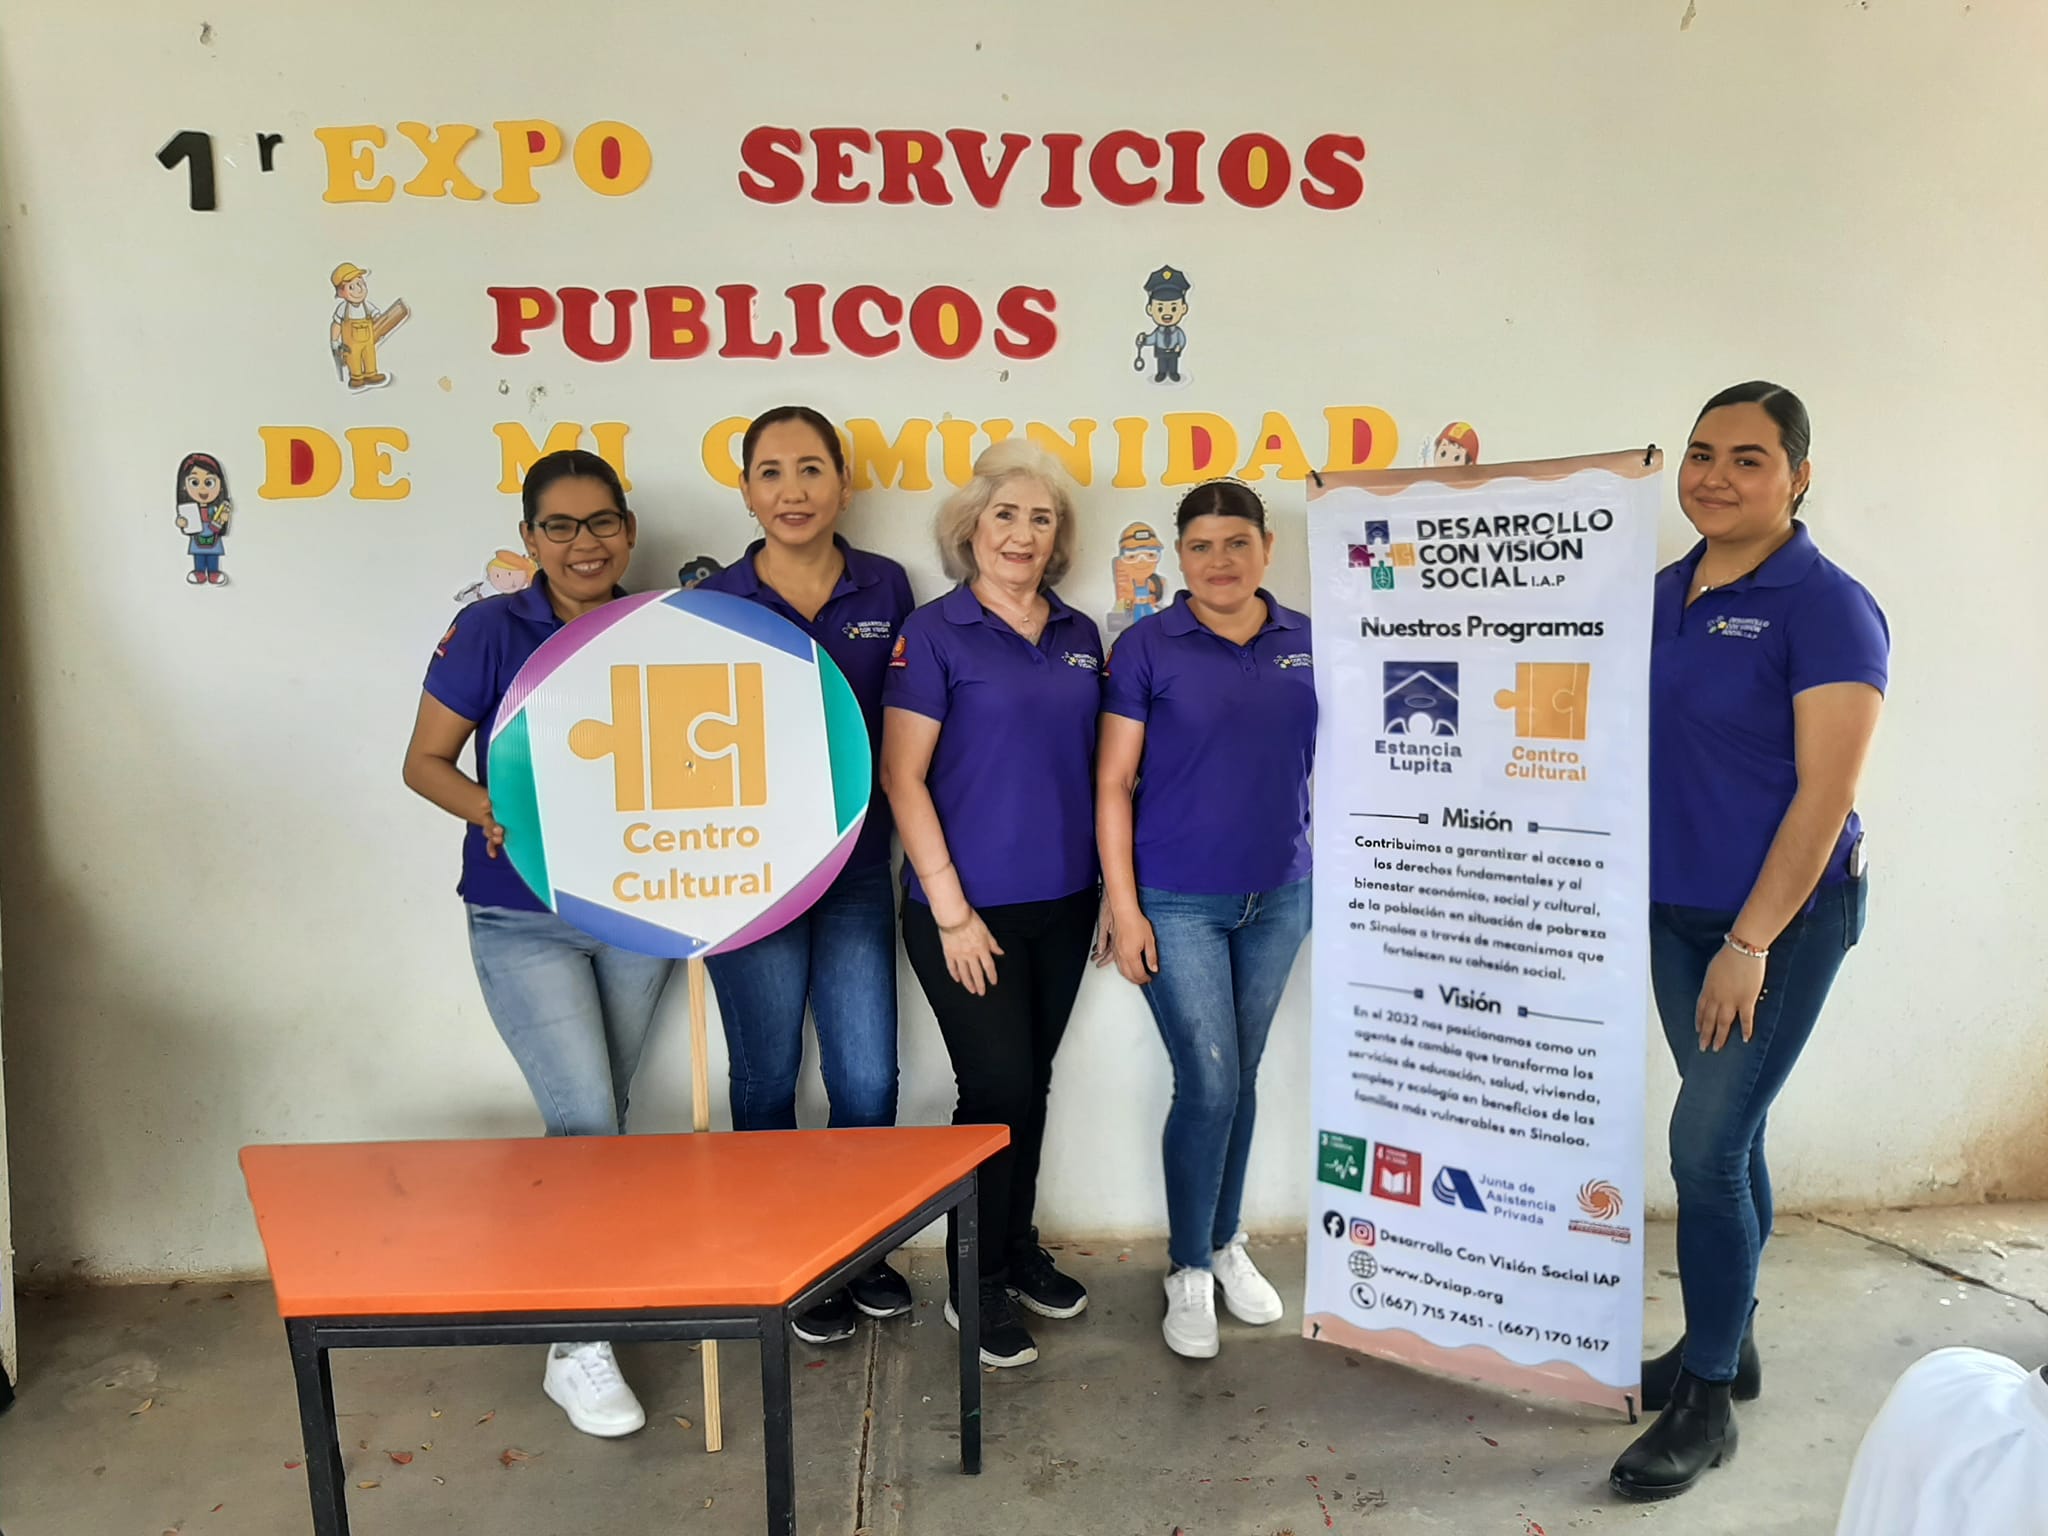 Desarrollo con Visión Social IAP: Cambia vidas en Sinaloa